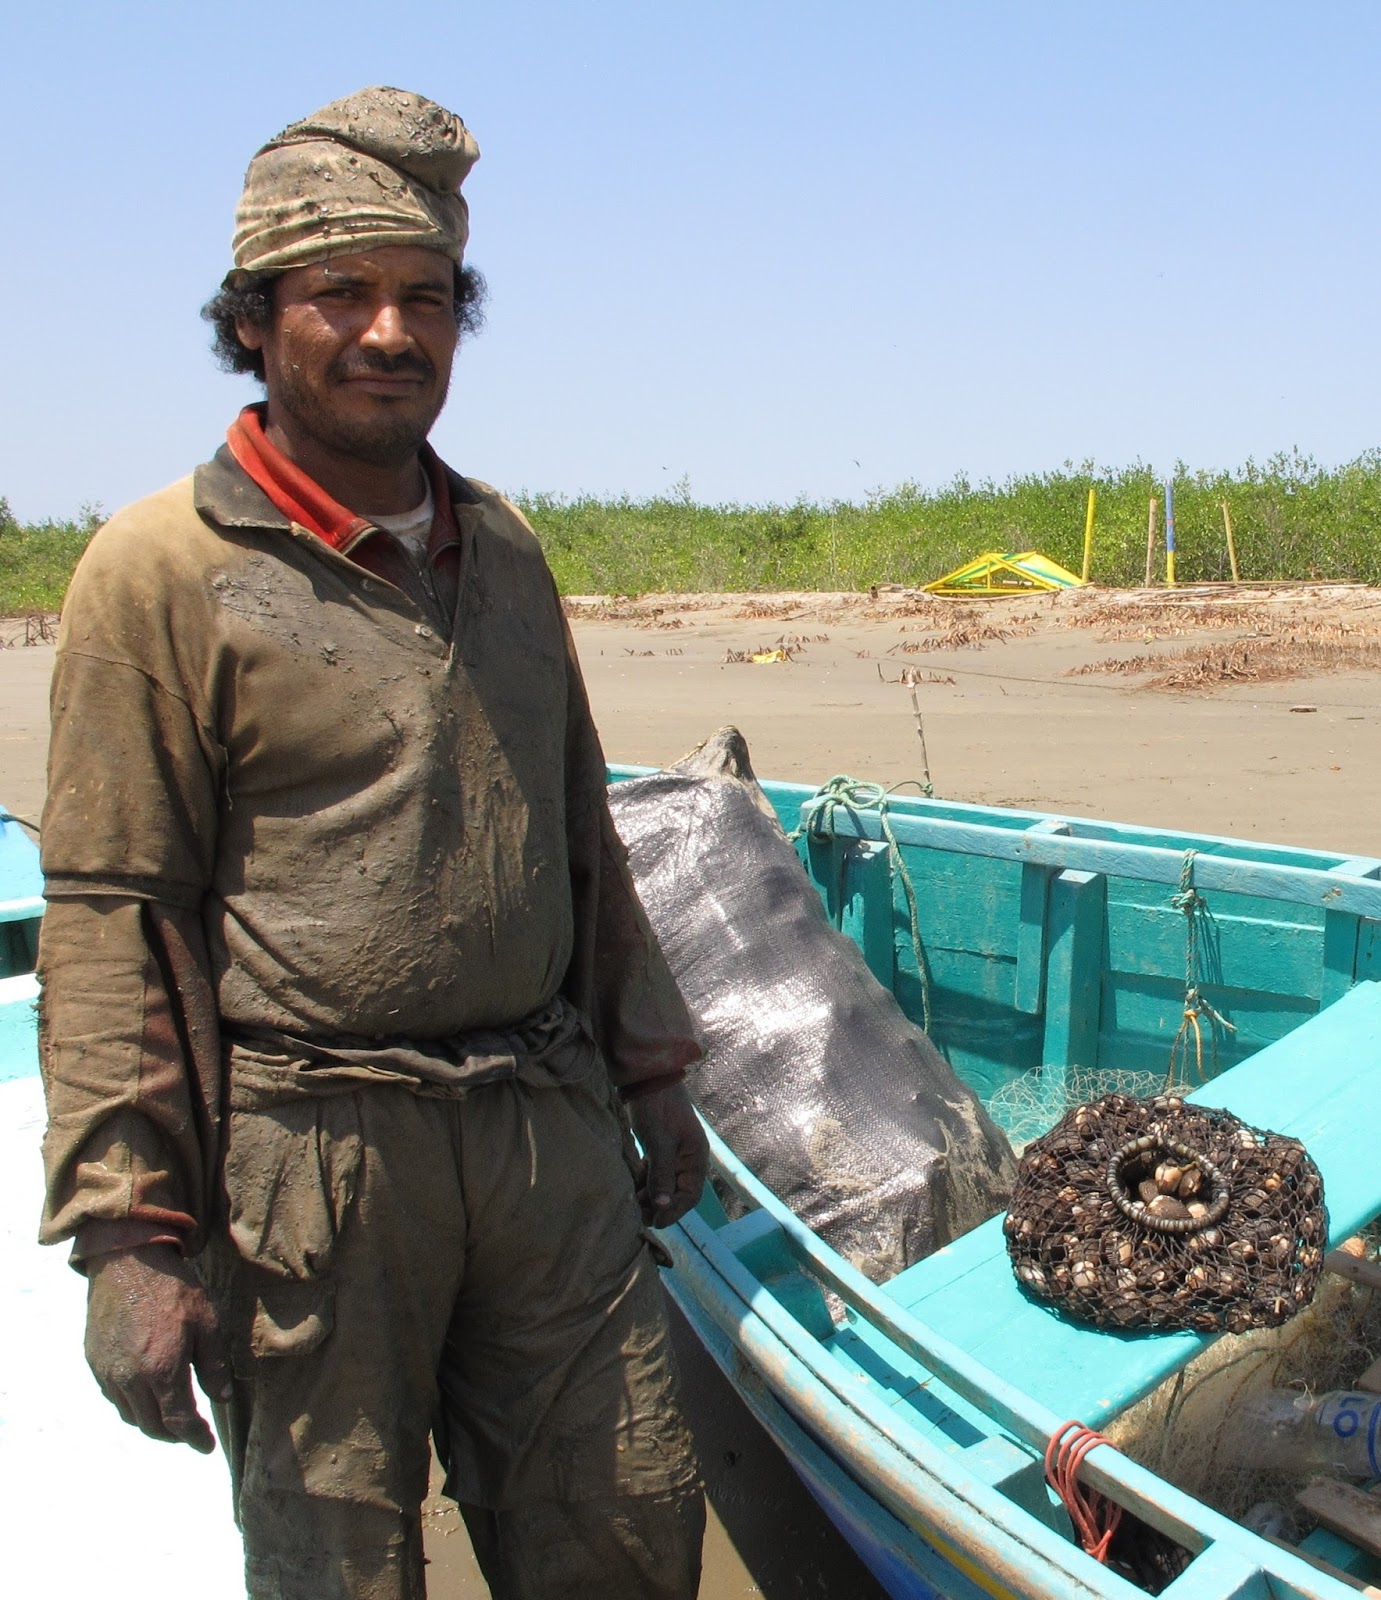 Mariscador Isla del Amor conchas negras Shellfish worker